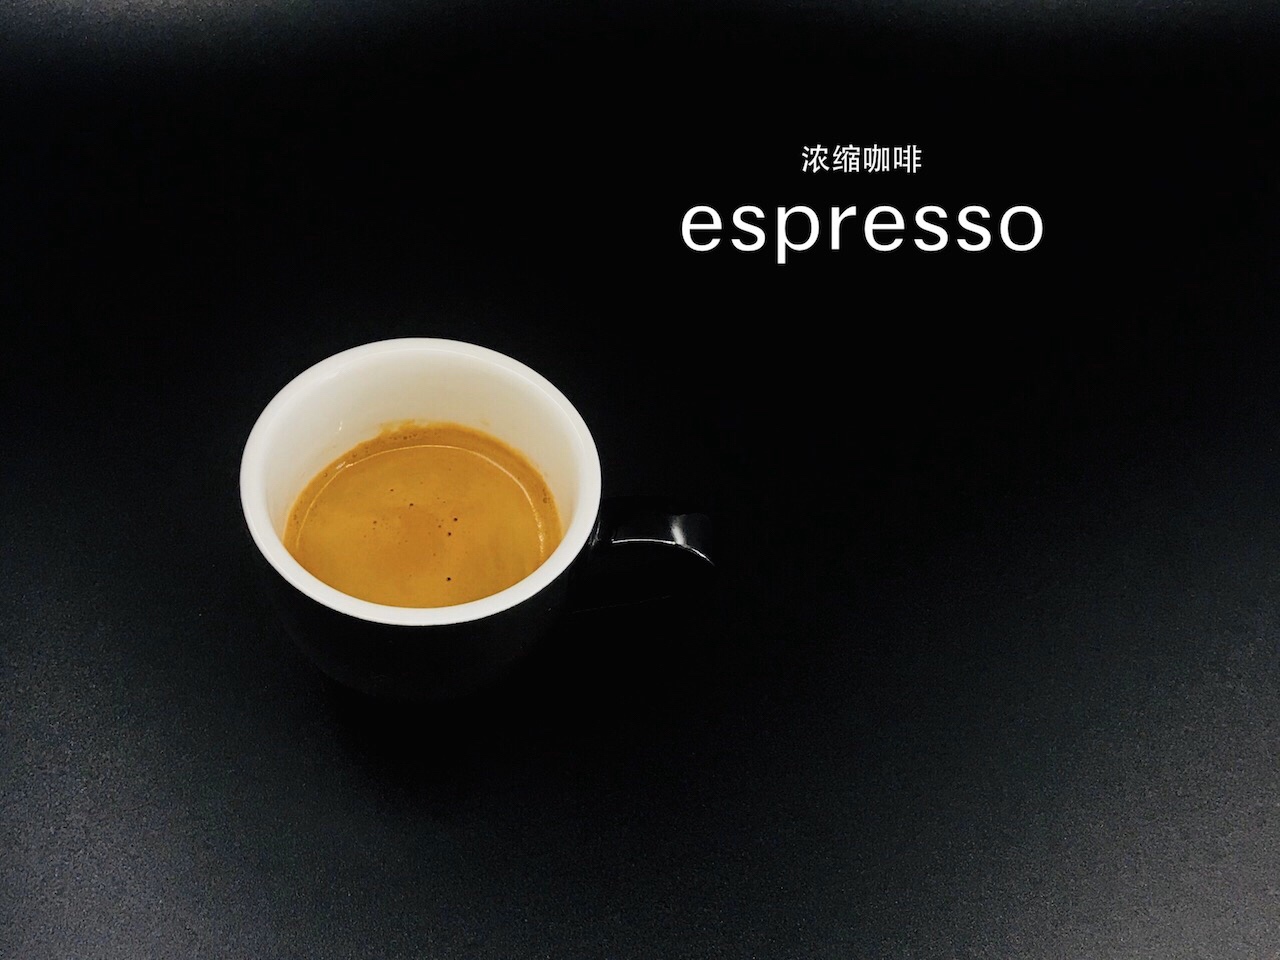 【冠军的咖啡配方】之“espresso浓缩咖啡”的做法